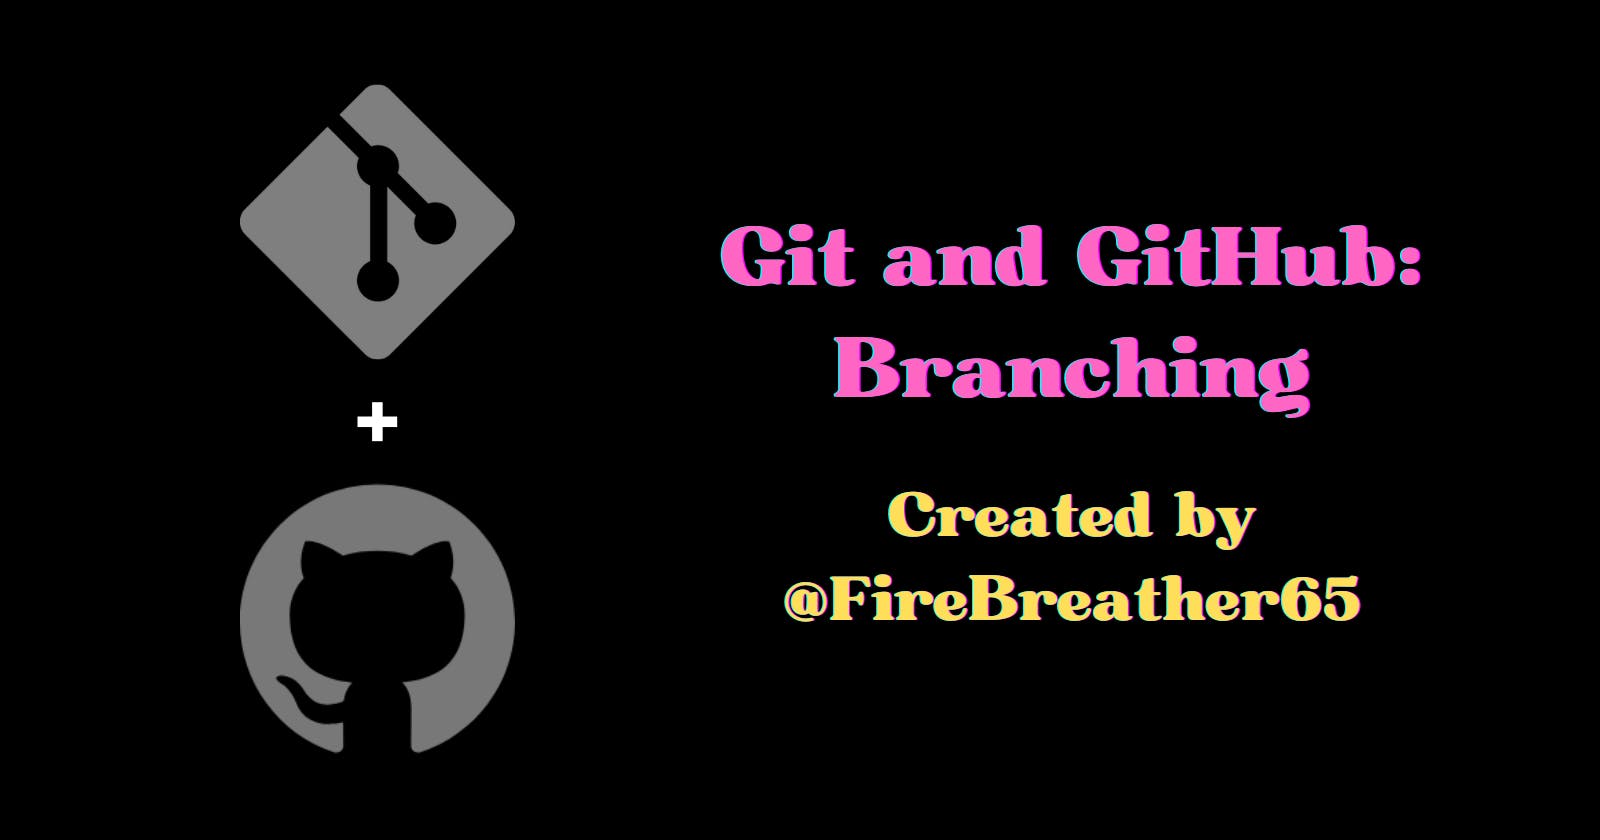 Git and GitHub: Branching